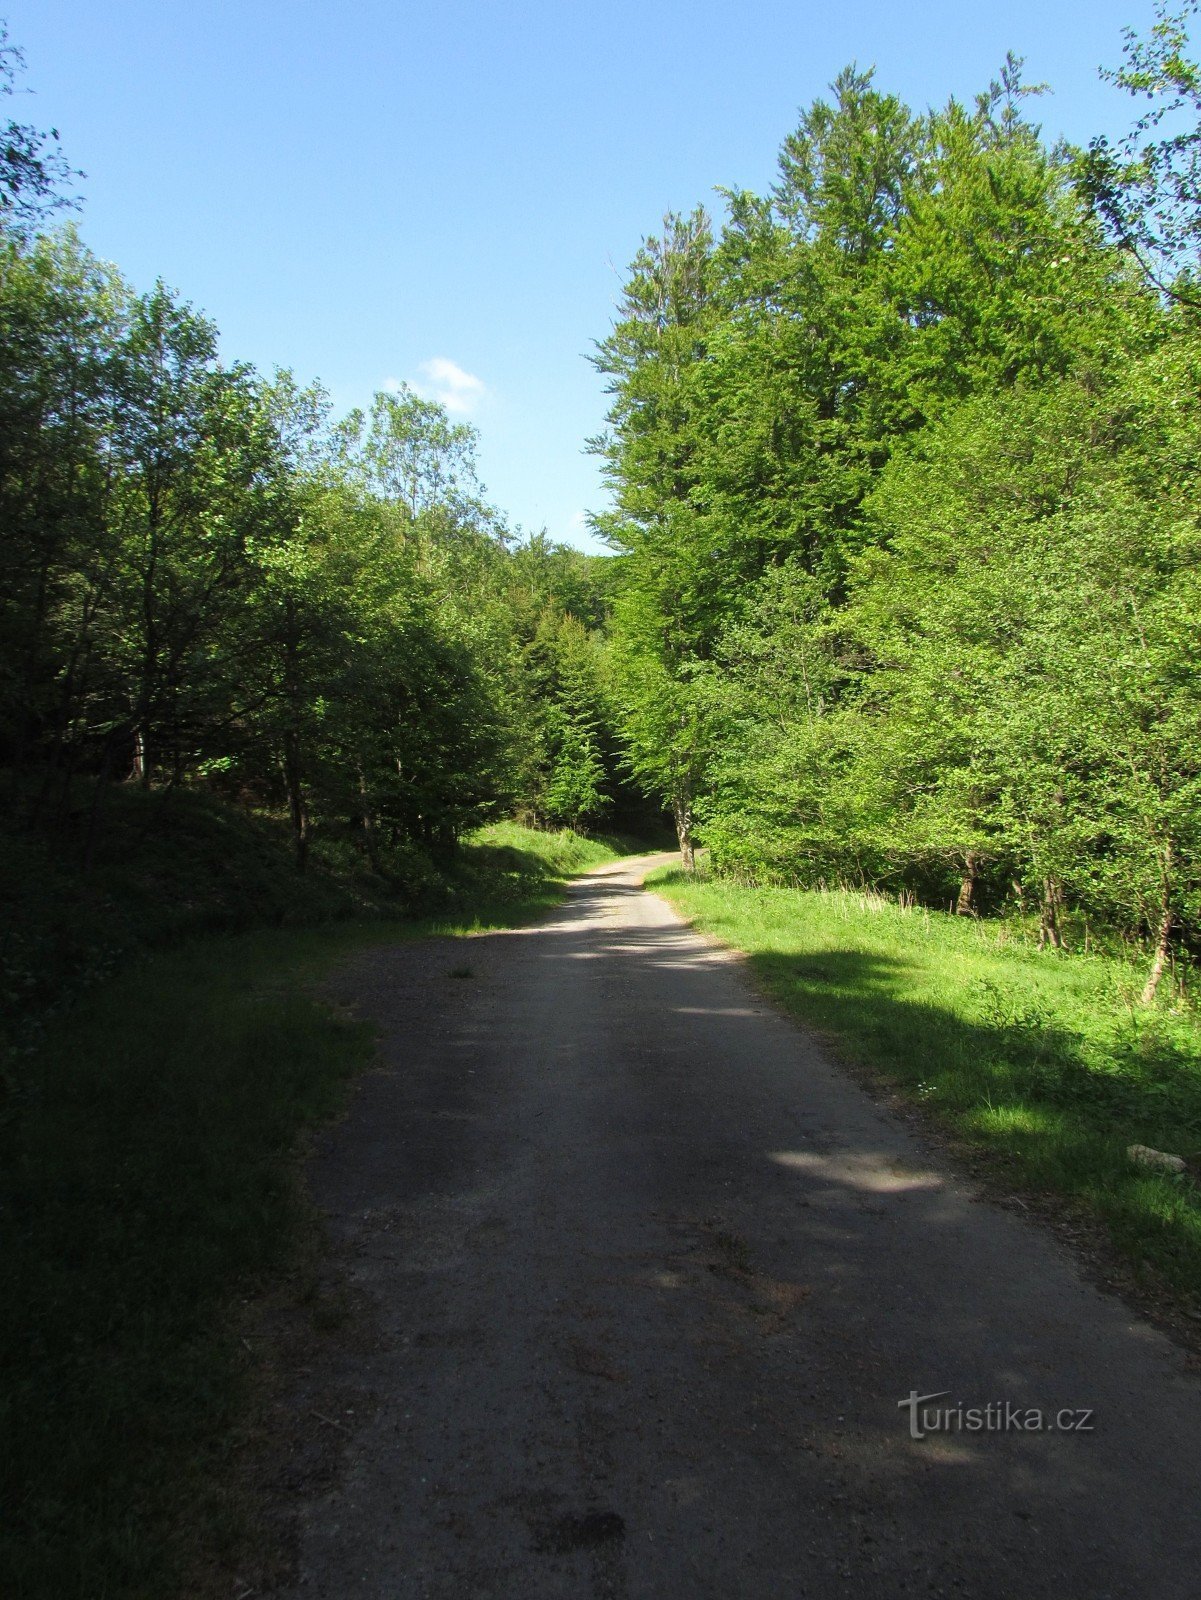 strada forestale superiore